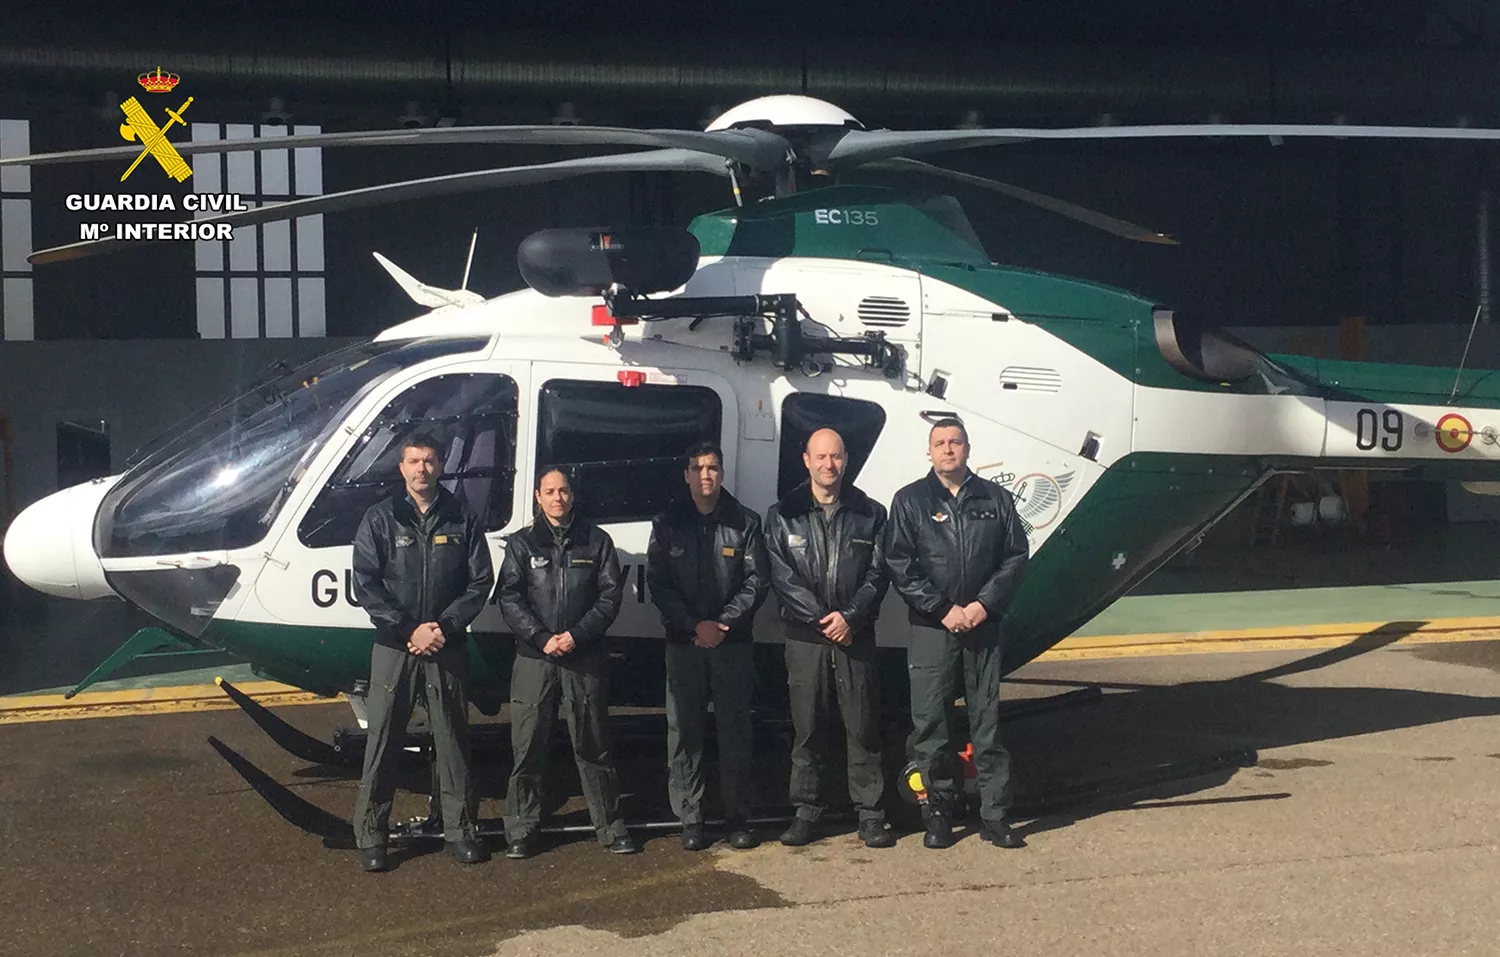 Comienza a operar en León el nuevo modelo de helicóptero de la Guardia Civil equipado con grúa de rescate